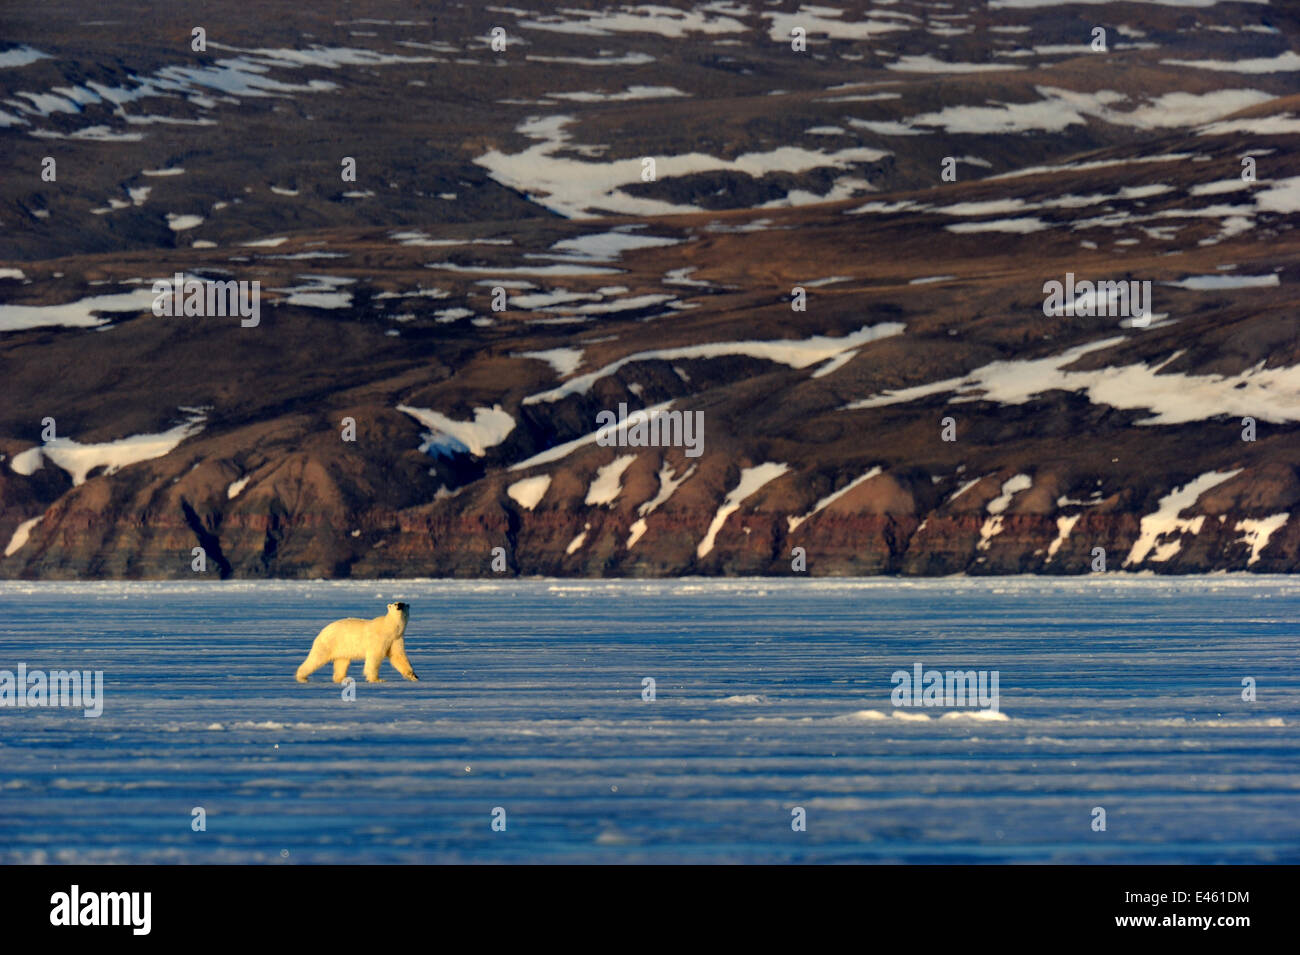 L'ours polaire (Ursus maritimus) marche sur la banquise avec côte de l'Arctique dans l'arrière-plan. Banquise, Arctic Bay, île de Baffin, Nunavut, Canada, avril. Banque D'Images